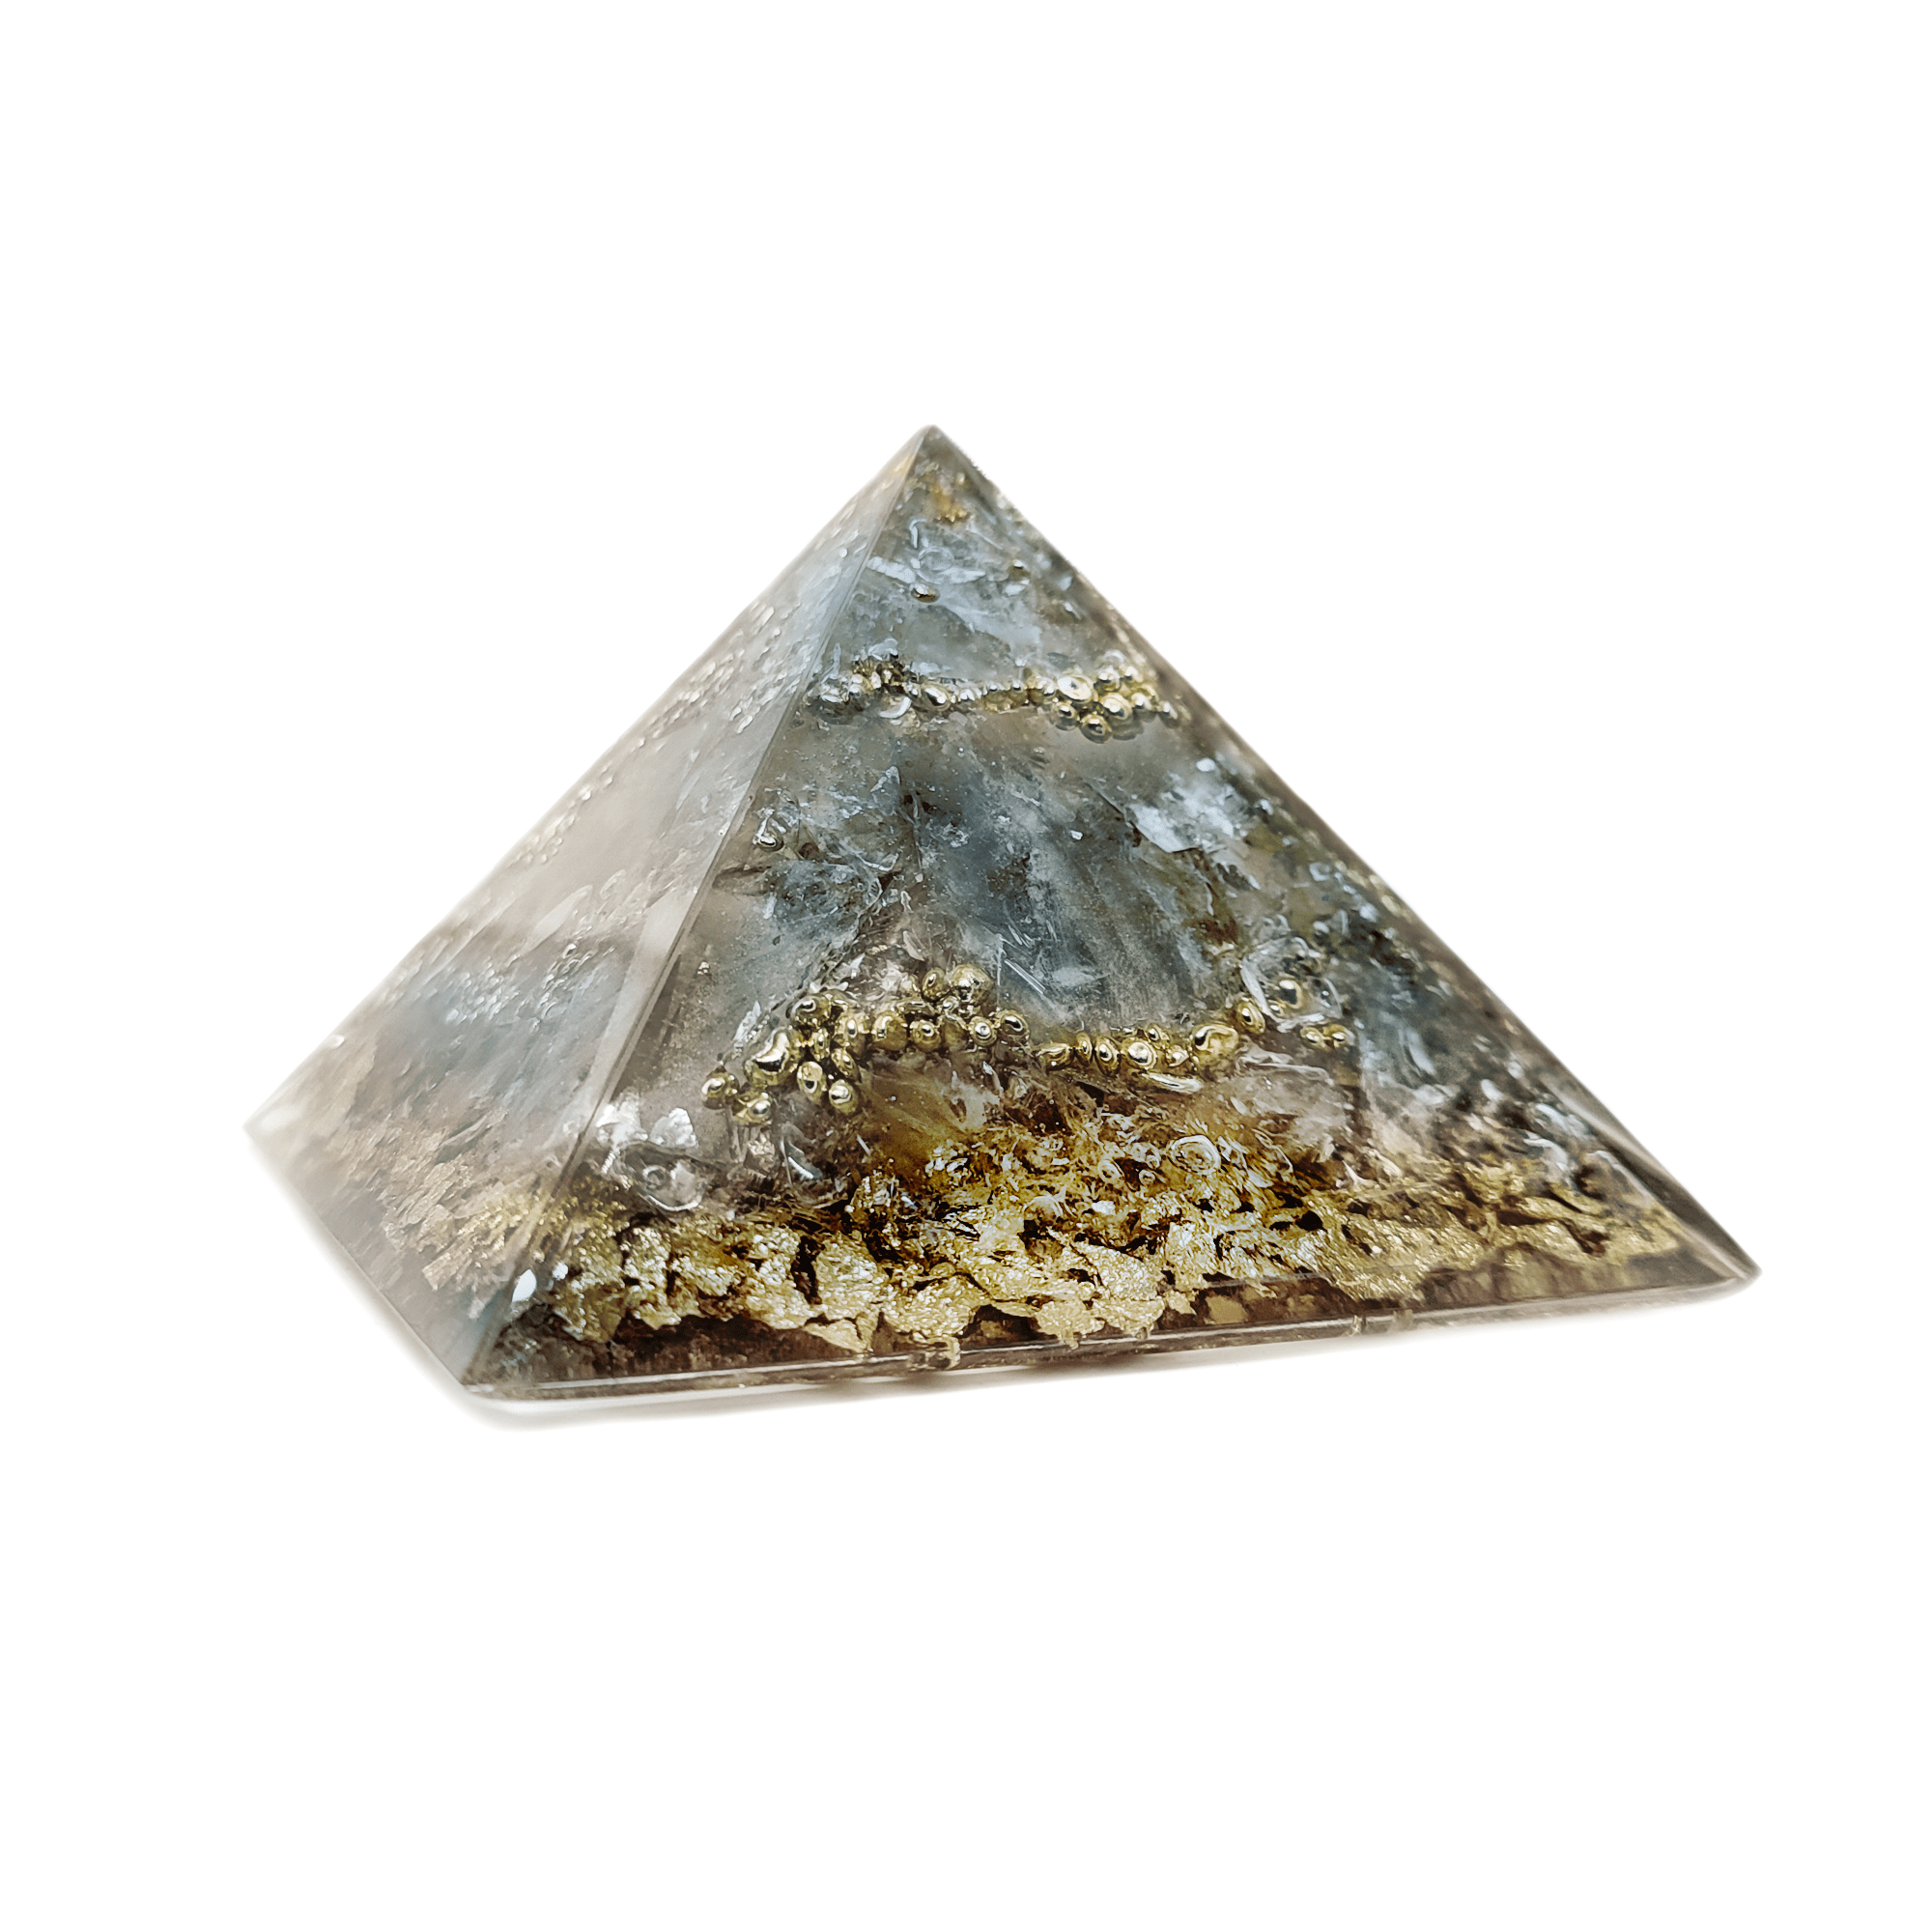 Graue Orgonit Pyramide mit goldenen Metall Elementen. Der primär enthaltene Edelstein Rauchquarz gibt diesem Orgoniten seine Farbe.